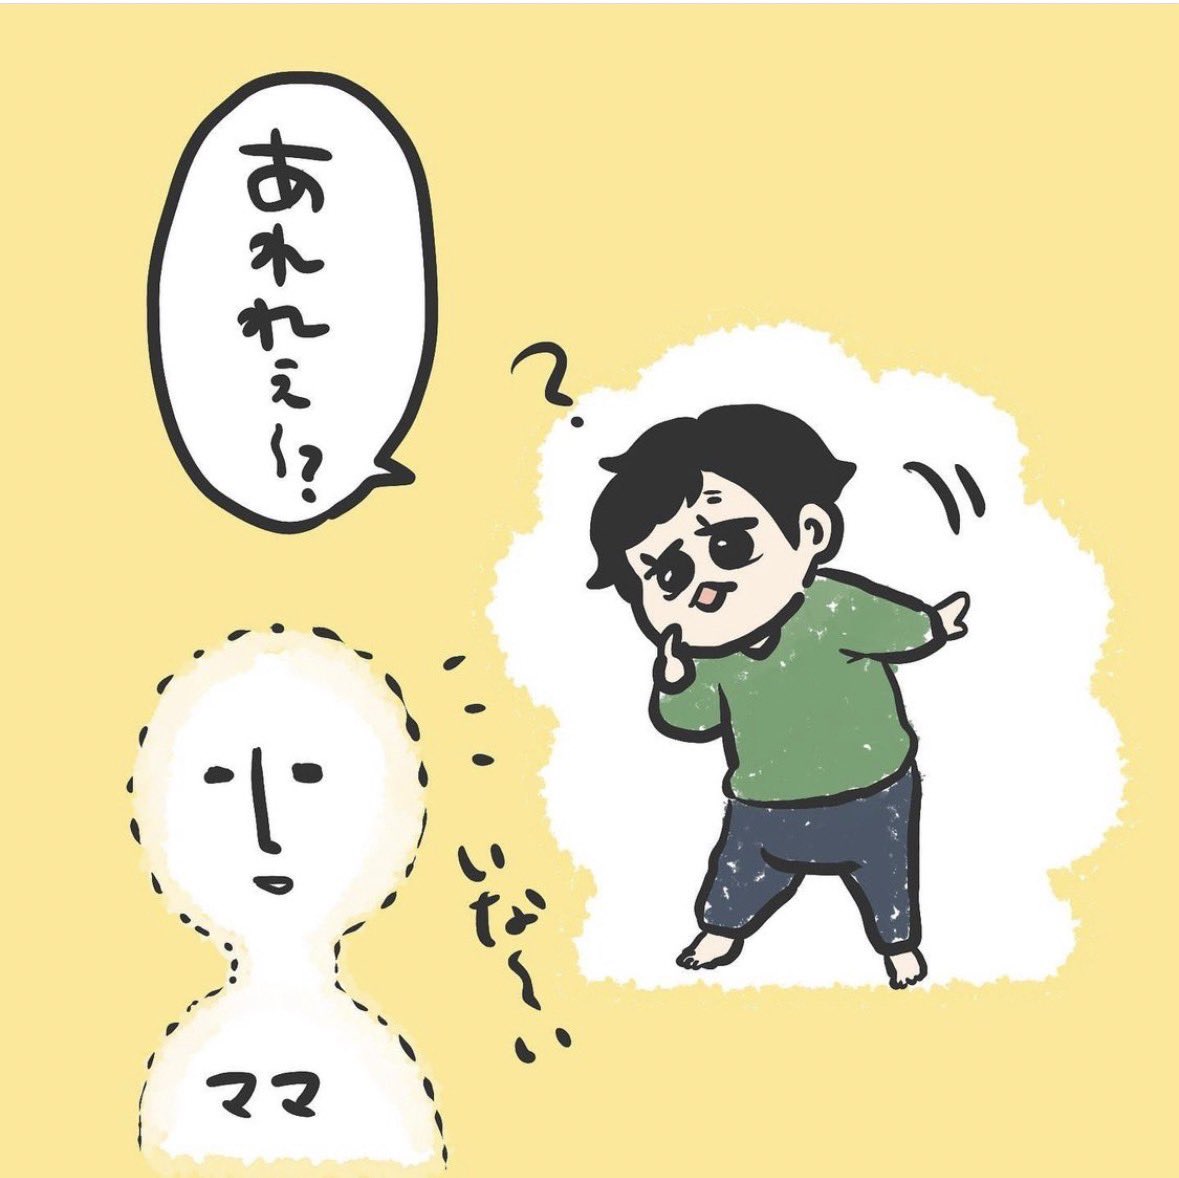 あれれ〜?(1/2)

育児漫画 